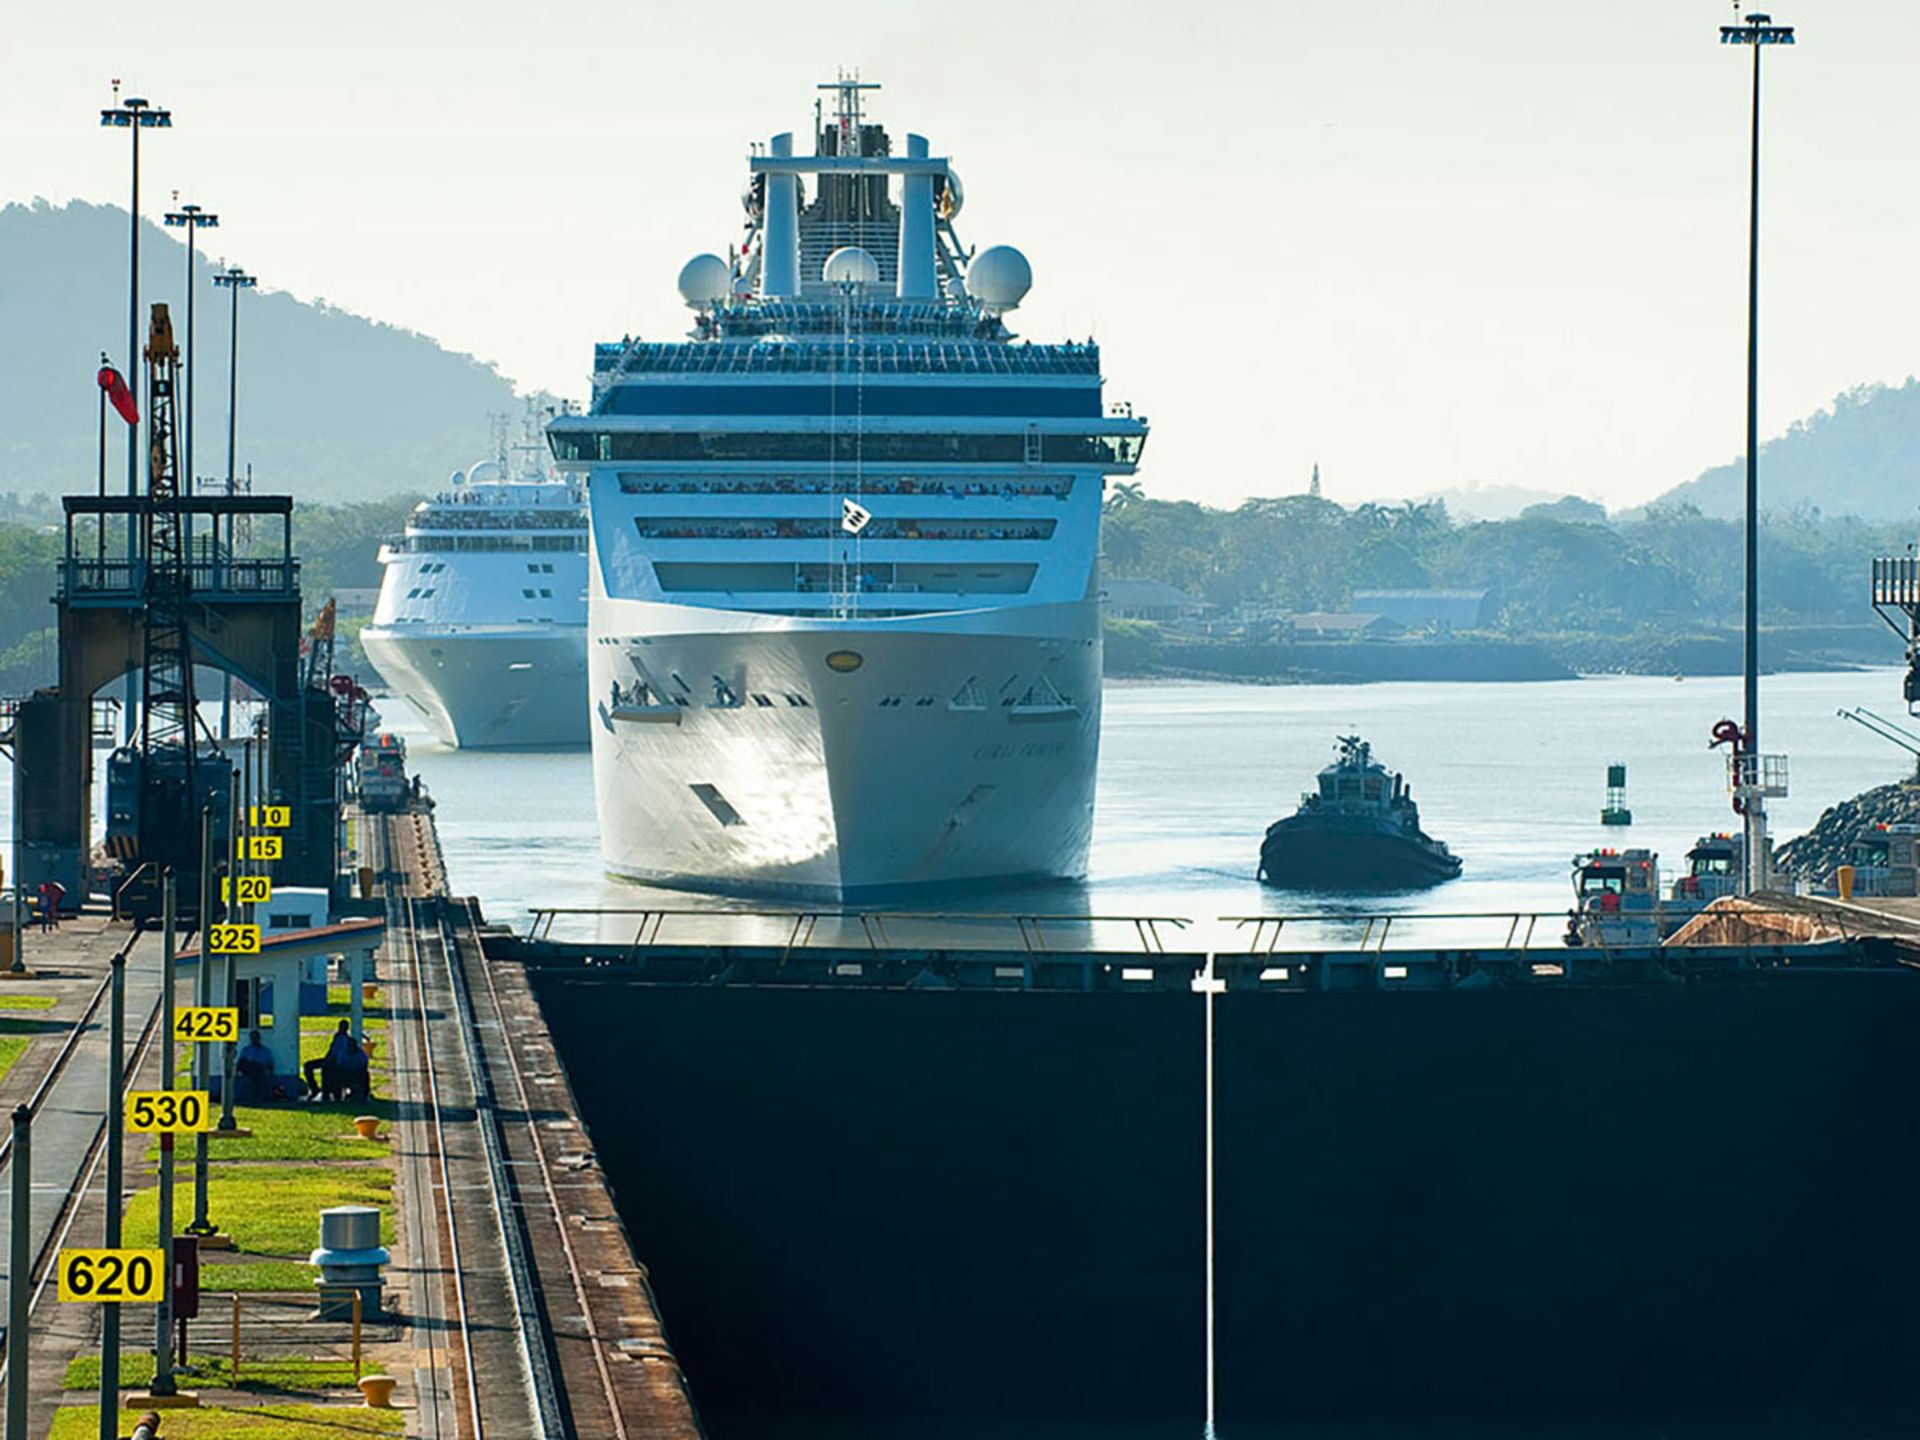 کشتی باری در حال نزدیک شدن به سد سلولی کانال پاناما / Panama Canal